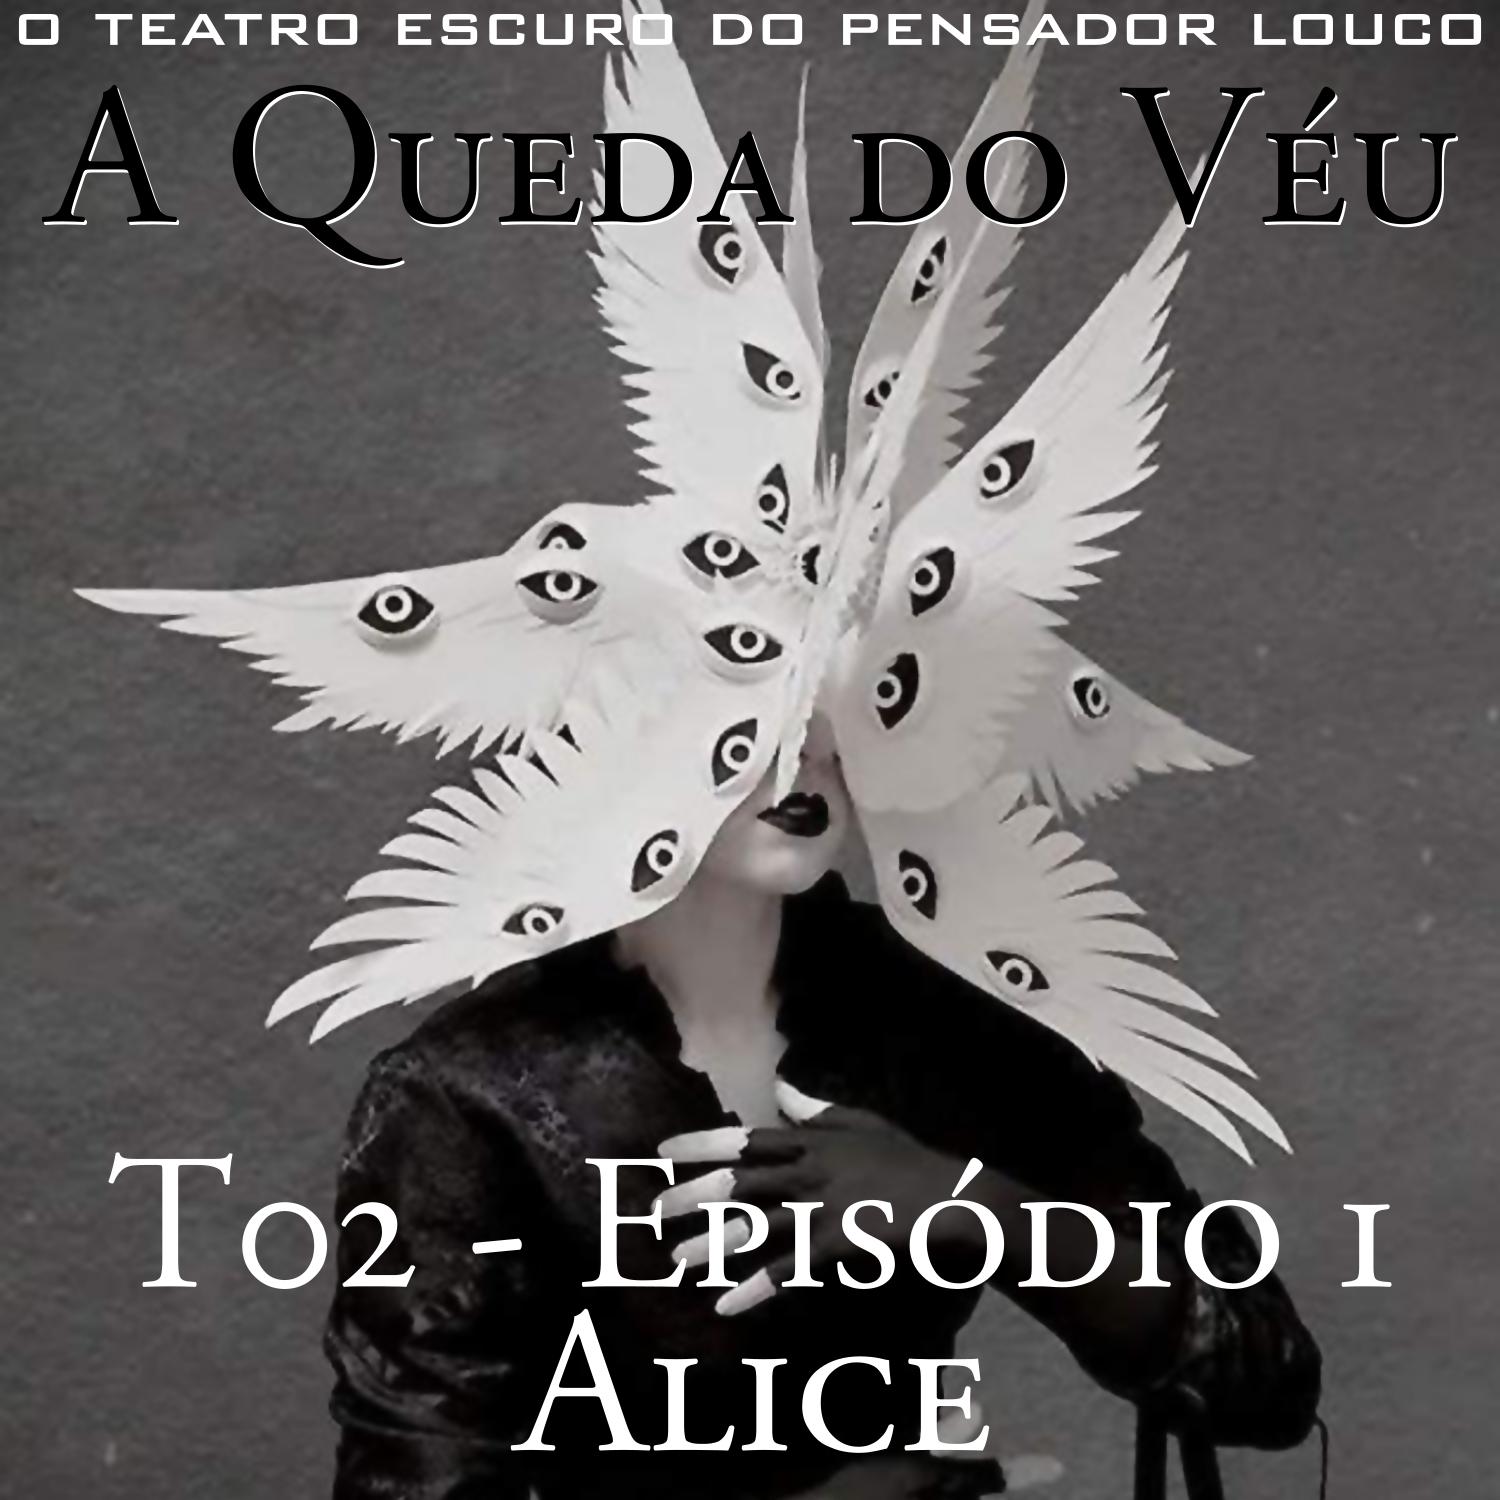 A Queda do Véu T02E01 - Alice